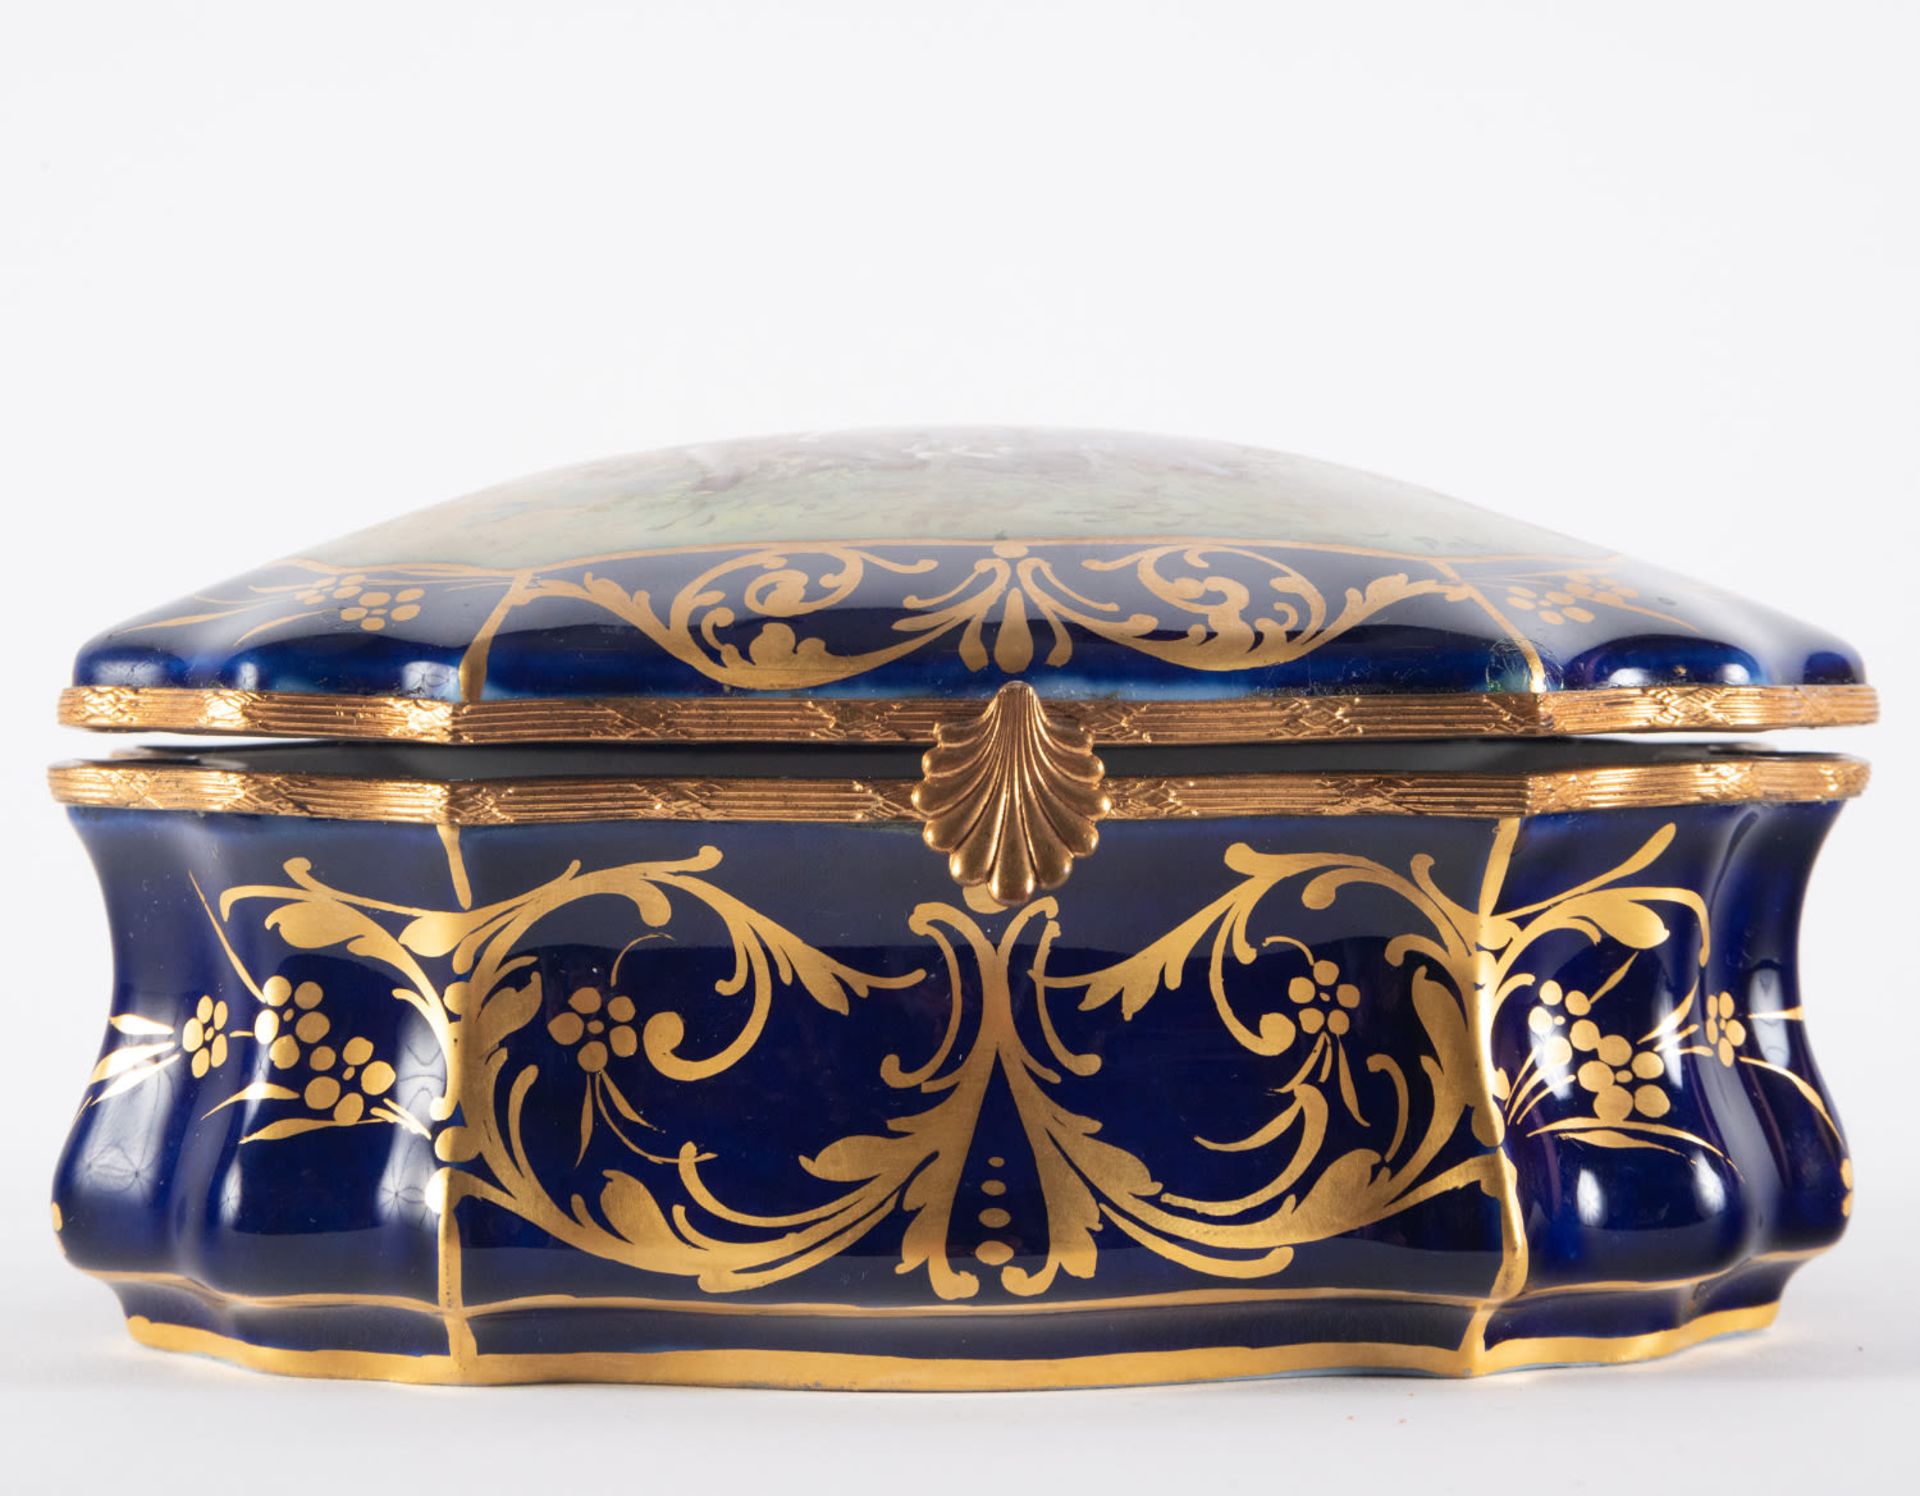 Enamelled Sèvres porcelain jewelry box, 19th century, Chateau de les Etoiles series